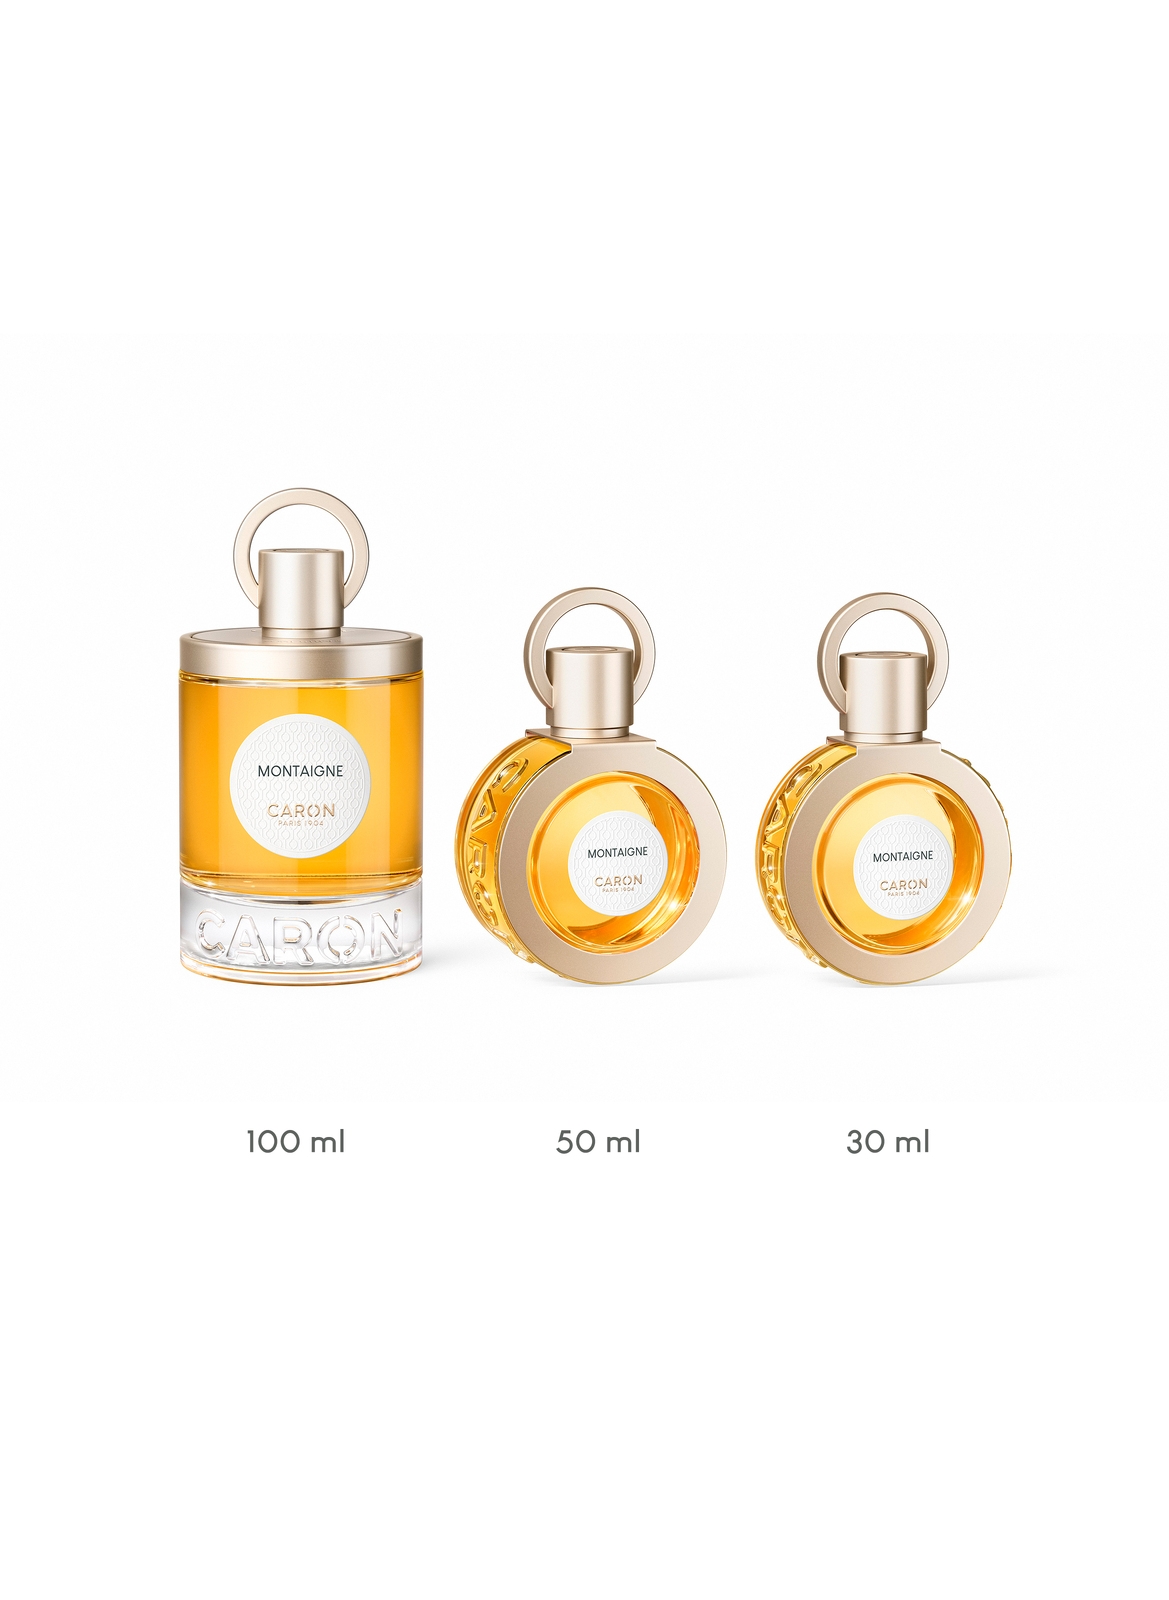 CARON Montaigne Perfume 30ml Refillable